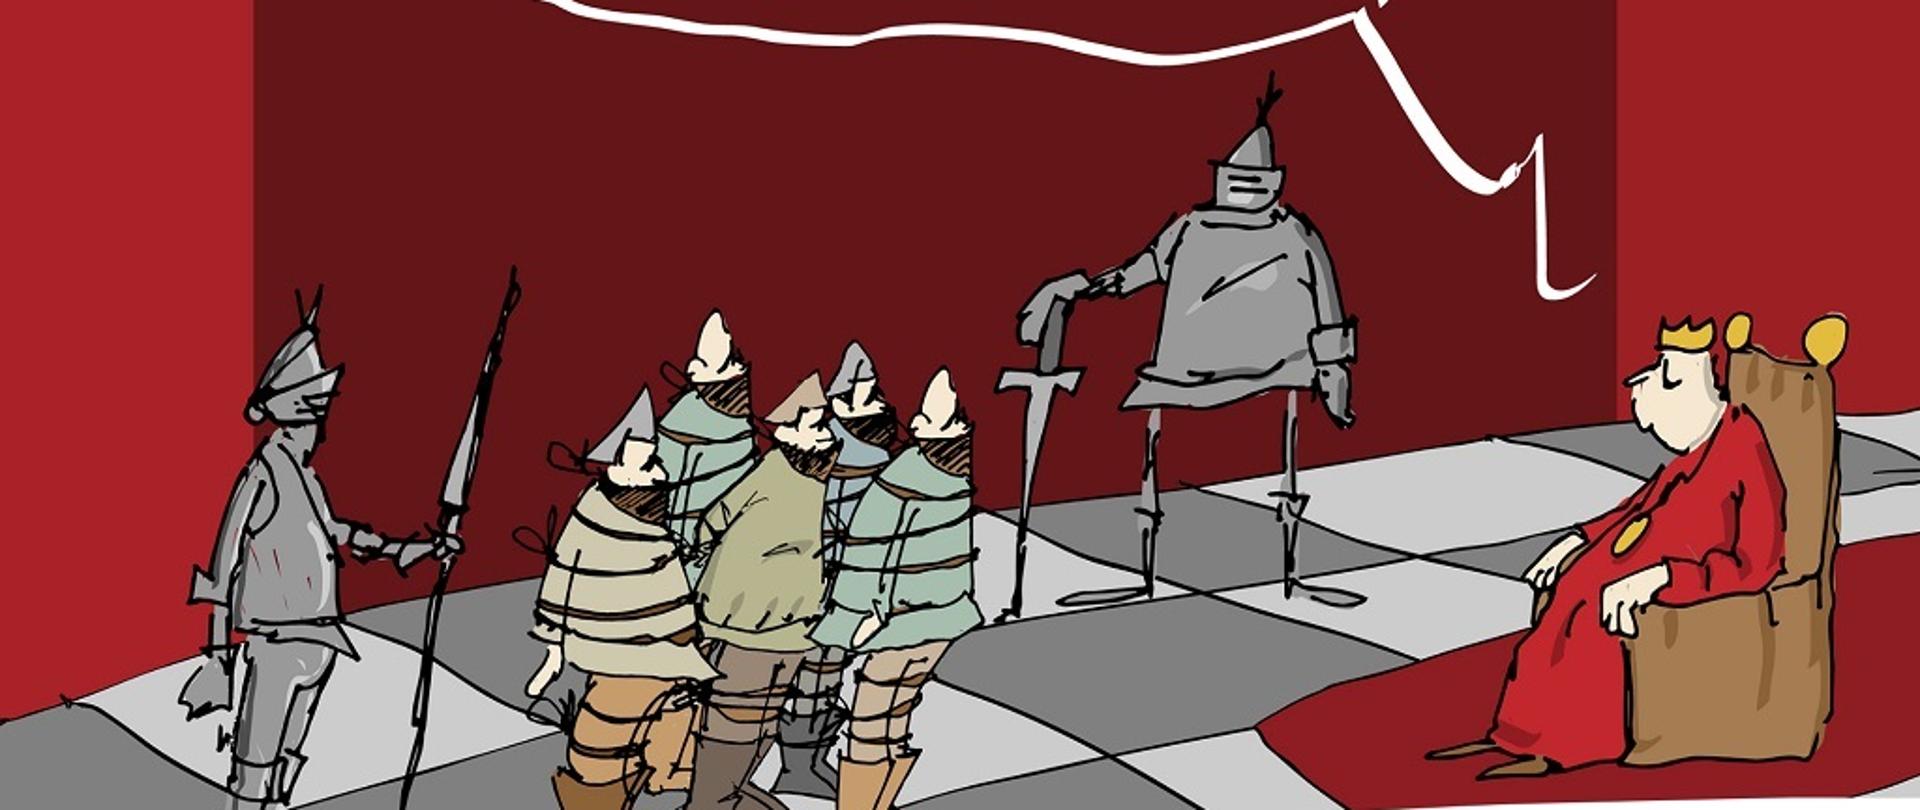 Grafika przedstawia rysunek odręczny zrobiony czarną cienką linią: na podłodze w jasno i ciemnoszarą szachownicę stoi pięciu mężczyzn w koszulach, spodniach i wysokich butach, każdy okręcony i związany sznurem, obu stronach stoją rycerze w szarych zbrojach, jeden z mieczem drugi z włócznią, na przeciwko na tronie siedzi król w czerwonej szacie z żółta korona na głowie; na królem znajduje się dymek z tekstem w środku narysowany biała kreską: jak wiecie jestem otwarty na dialog i konsultacje społeczne... w tle jest ciemnoczerwona ściana; w prawym dolnym rogu znajduje się białe pole z tekstem: projekt finansowany z budżetu Państwa, realizowany przez Powiat Siedlecki oraz herb powiatu siedleckiego